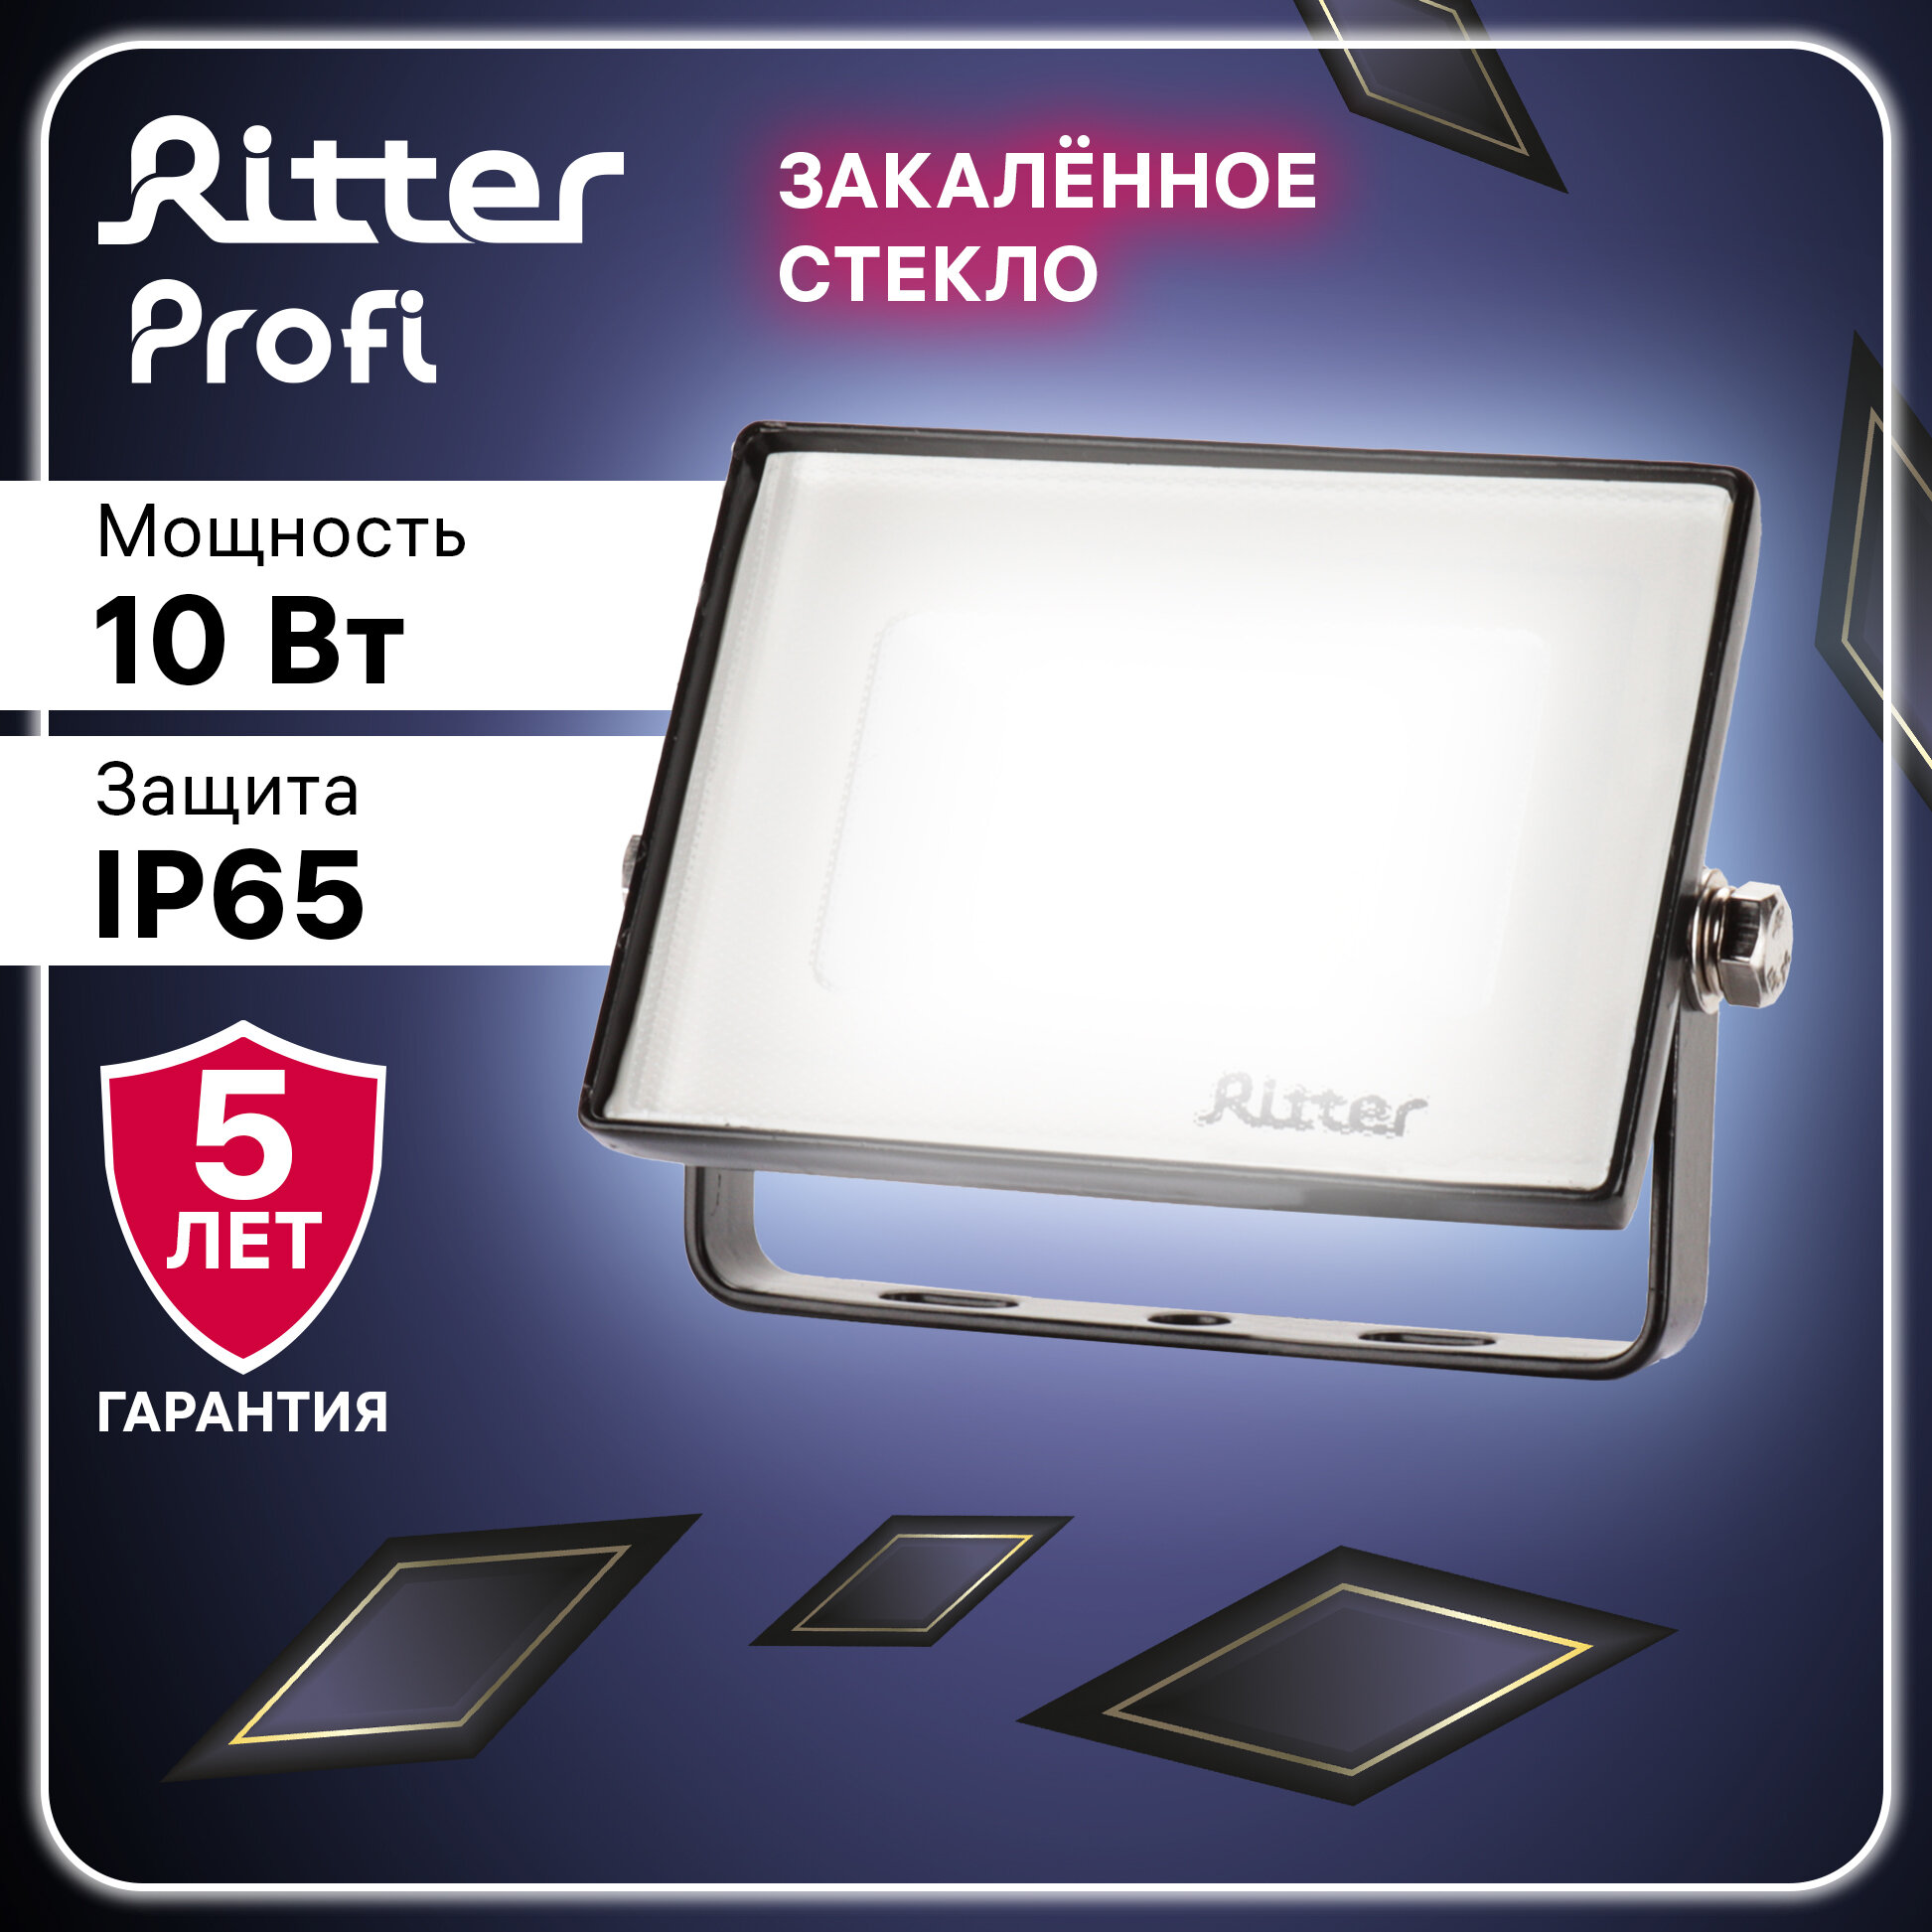 Прожектор светодиодный PROFI 10Вт, 180-240В, IP65, 6500К, 1000Лм, черный, Ritter, 53405 5